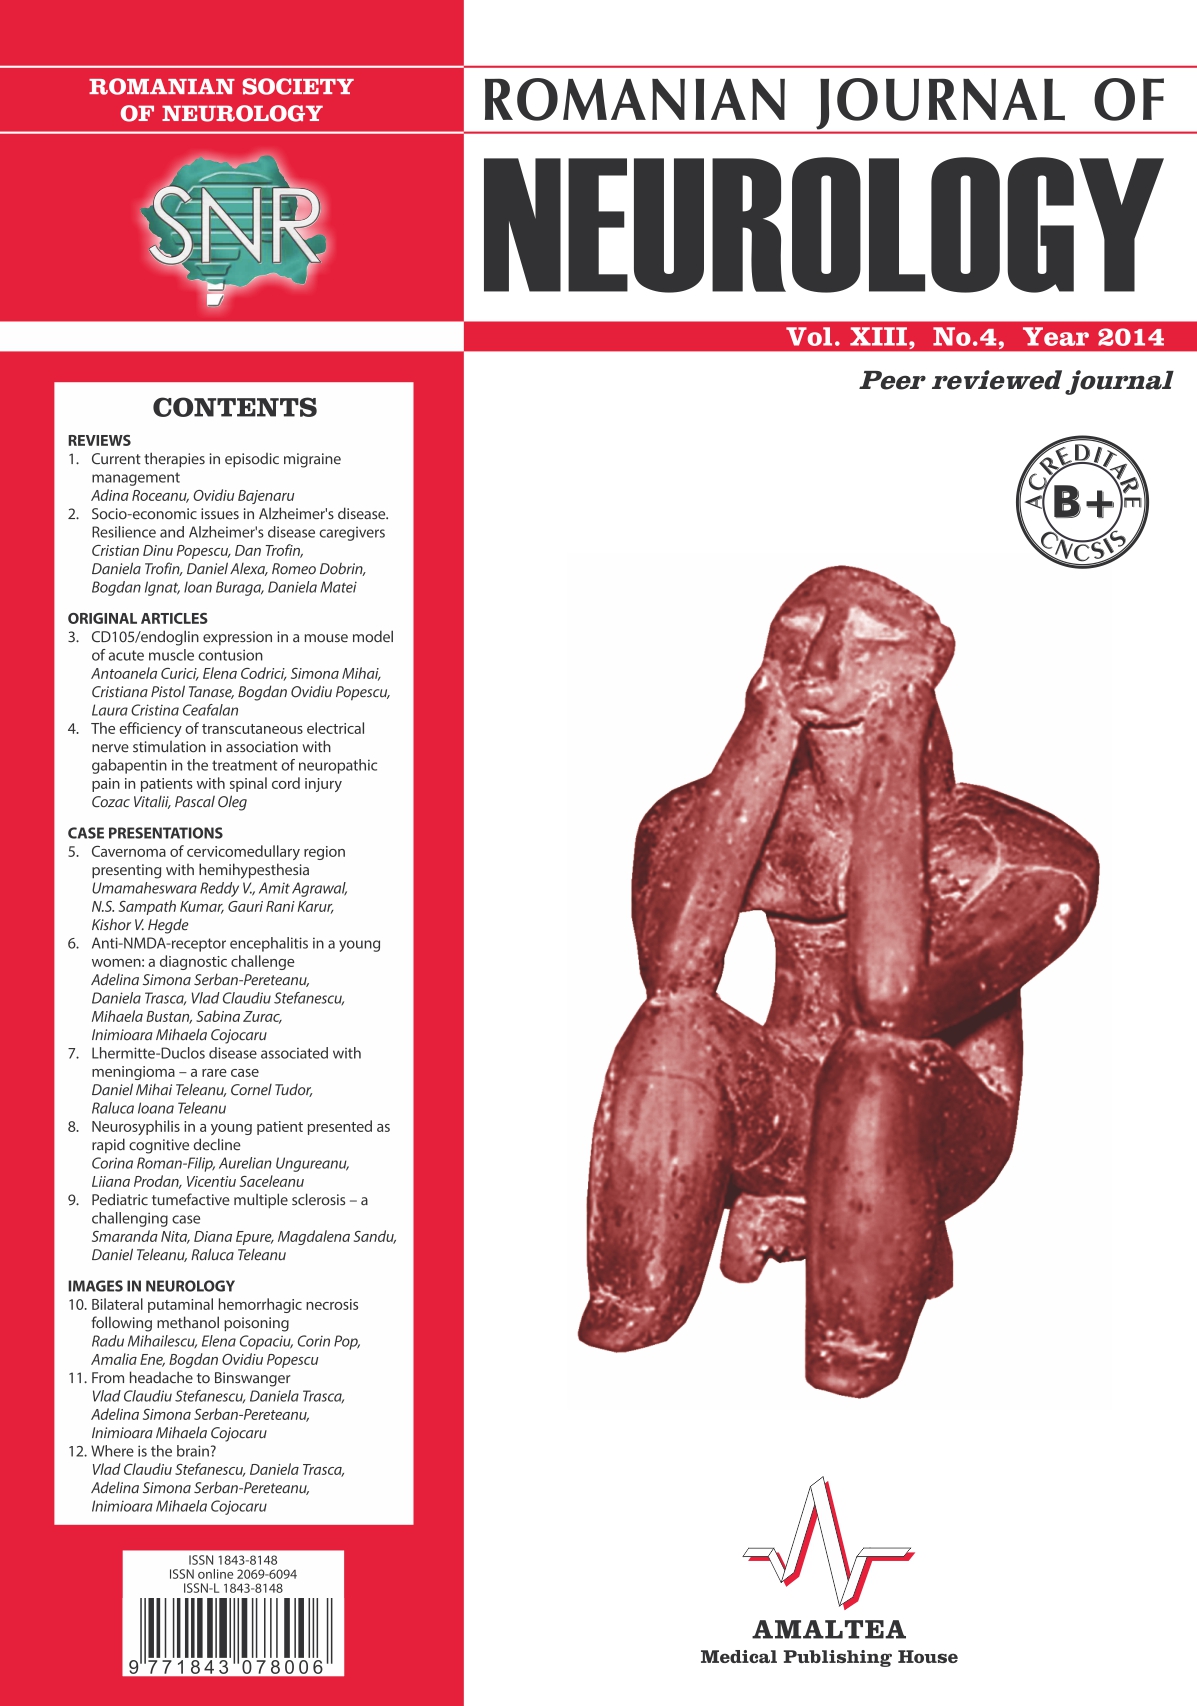 Romanian Journal of Neurology, Volume XIII, No. 4, 2014